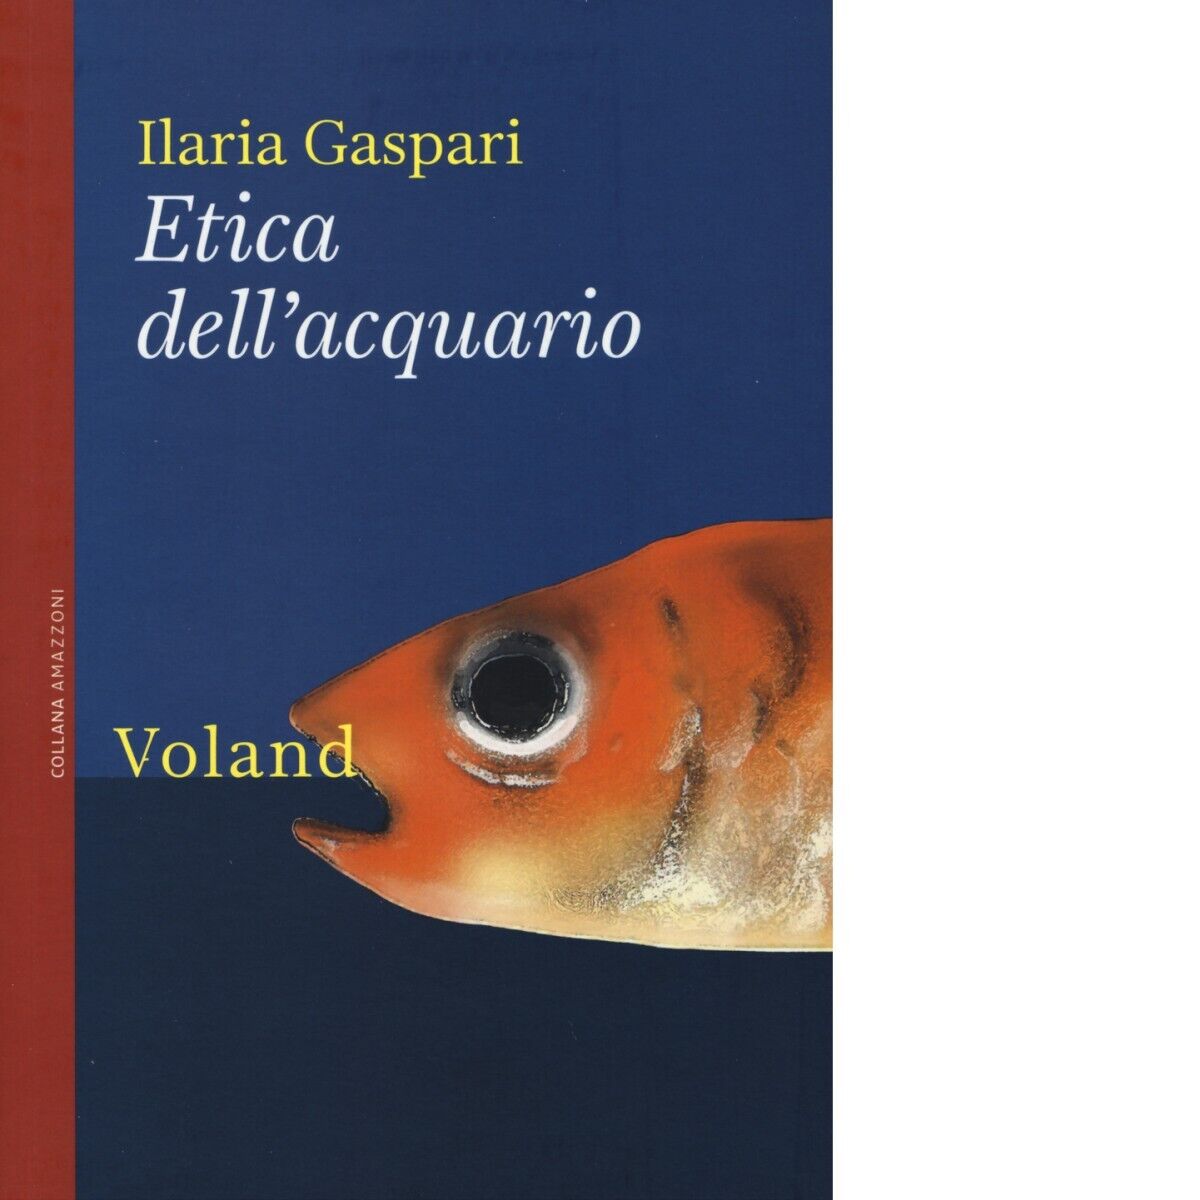  Etica delL'acquario di Ilaria Gaspari, 2015, Voland